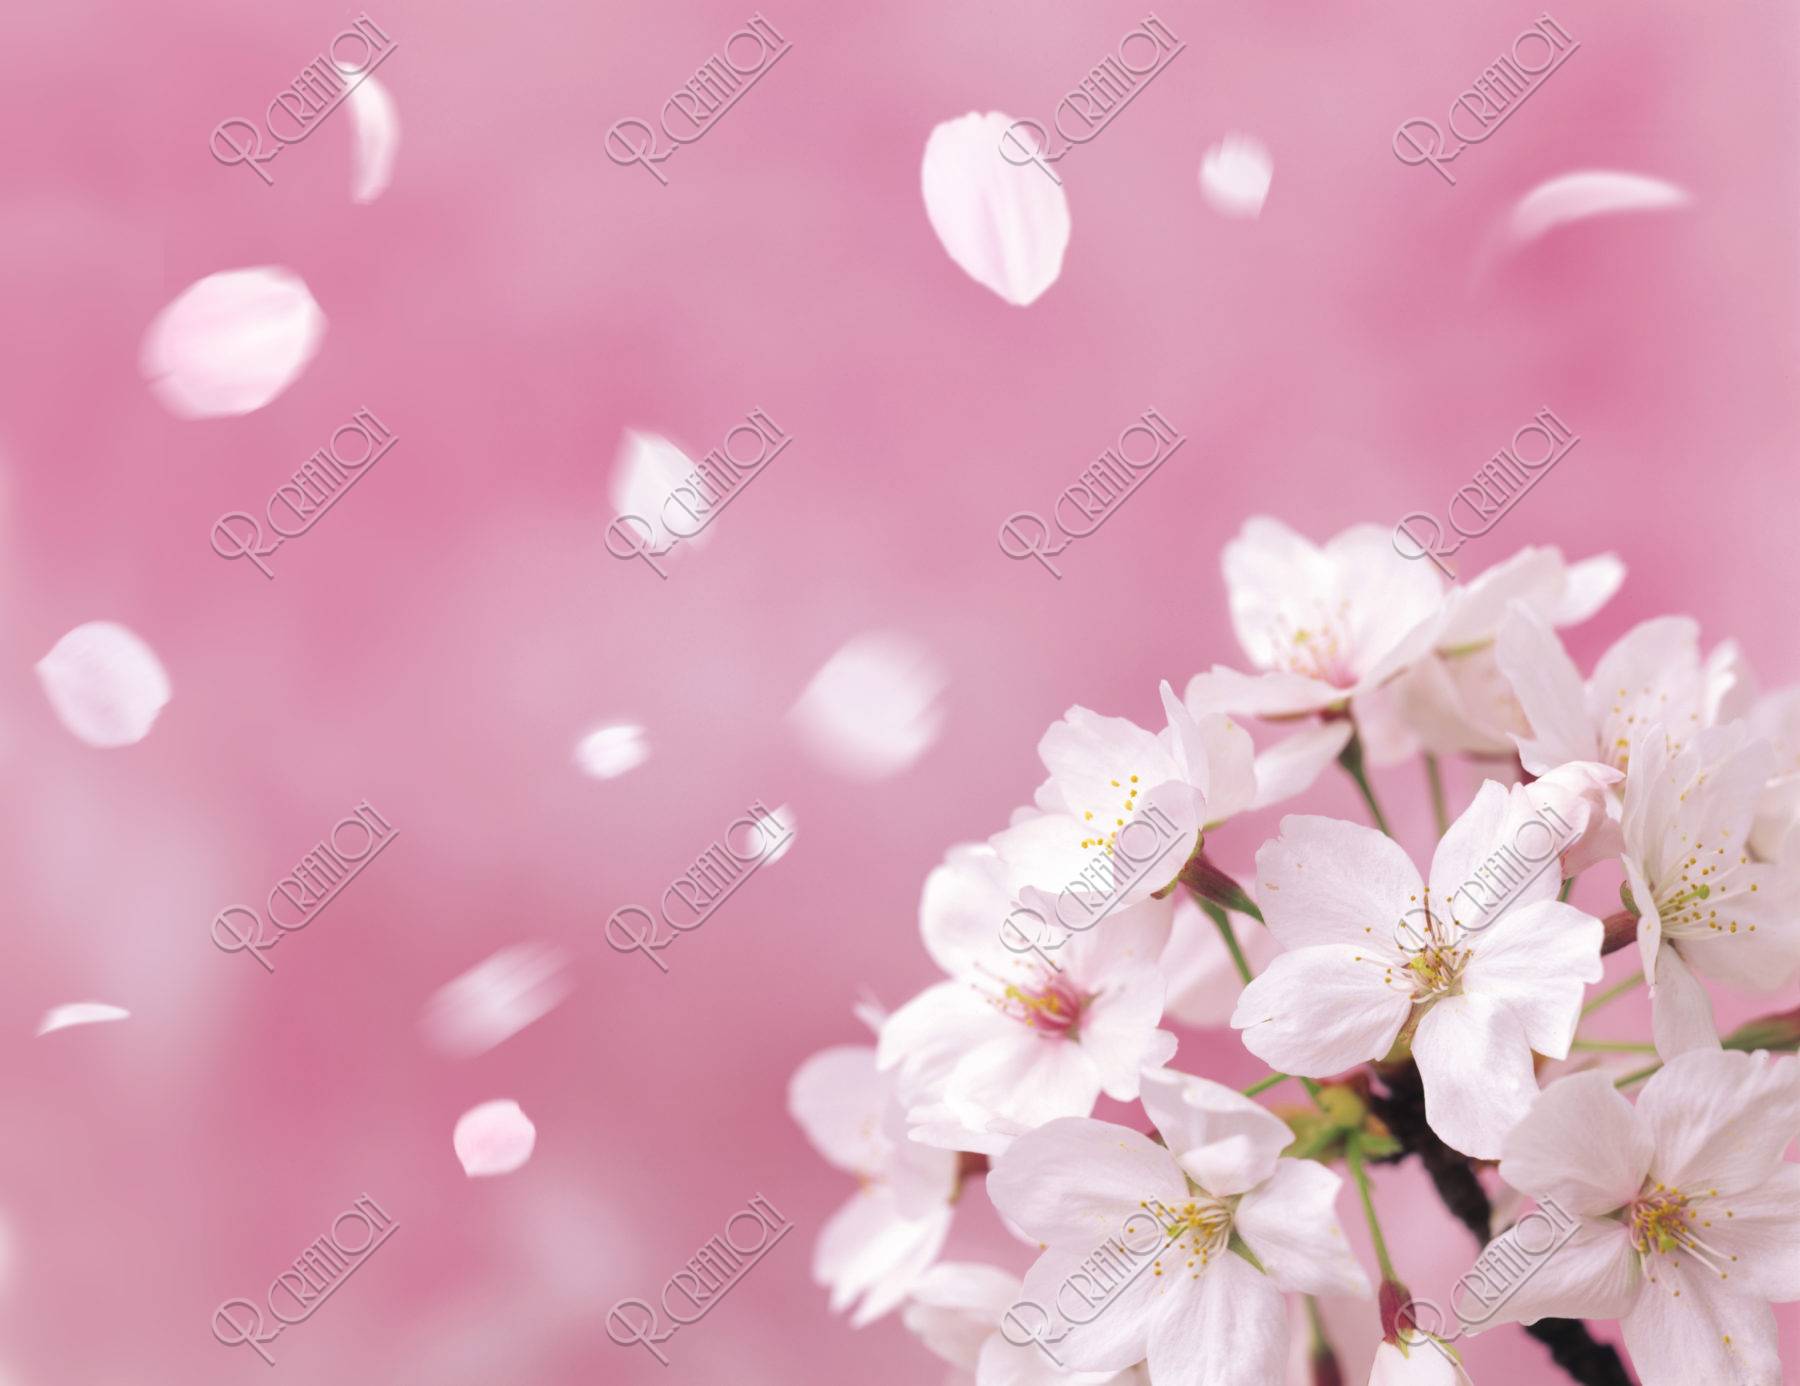 桜 桜吹雪 花吹雪 散る アップ 春 合成 ピンク ストックフォト アールクリエーション